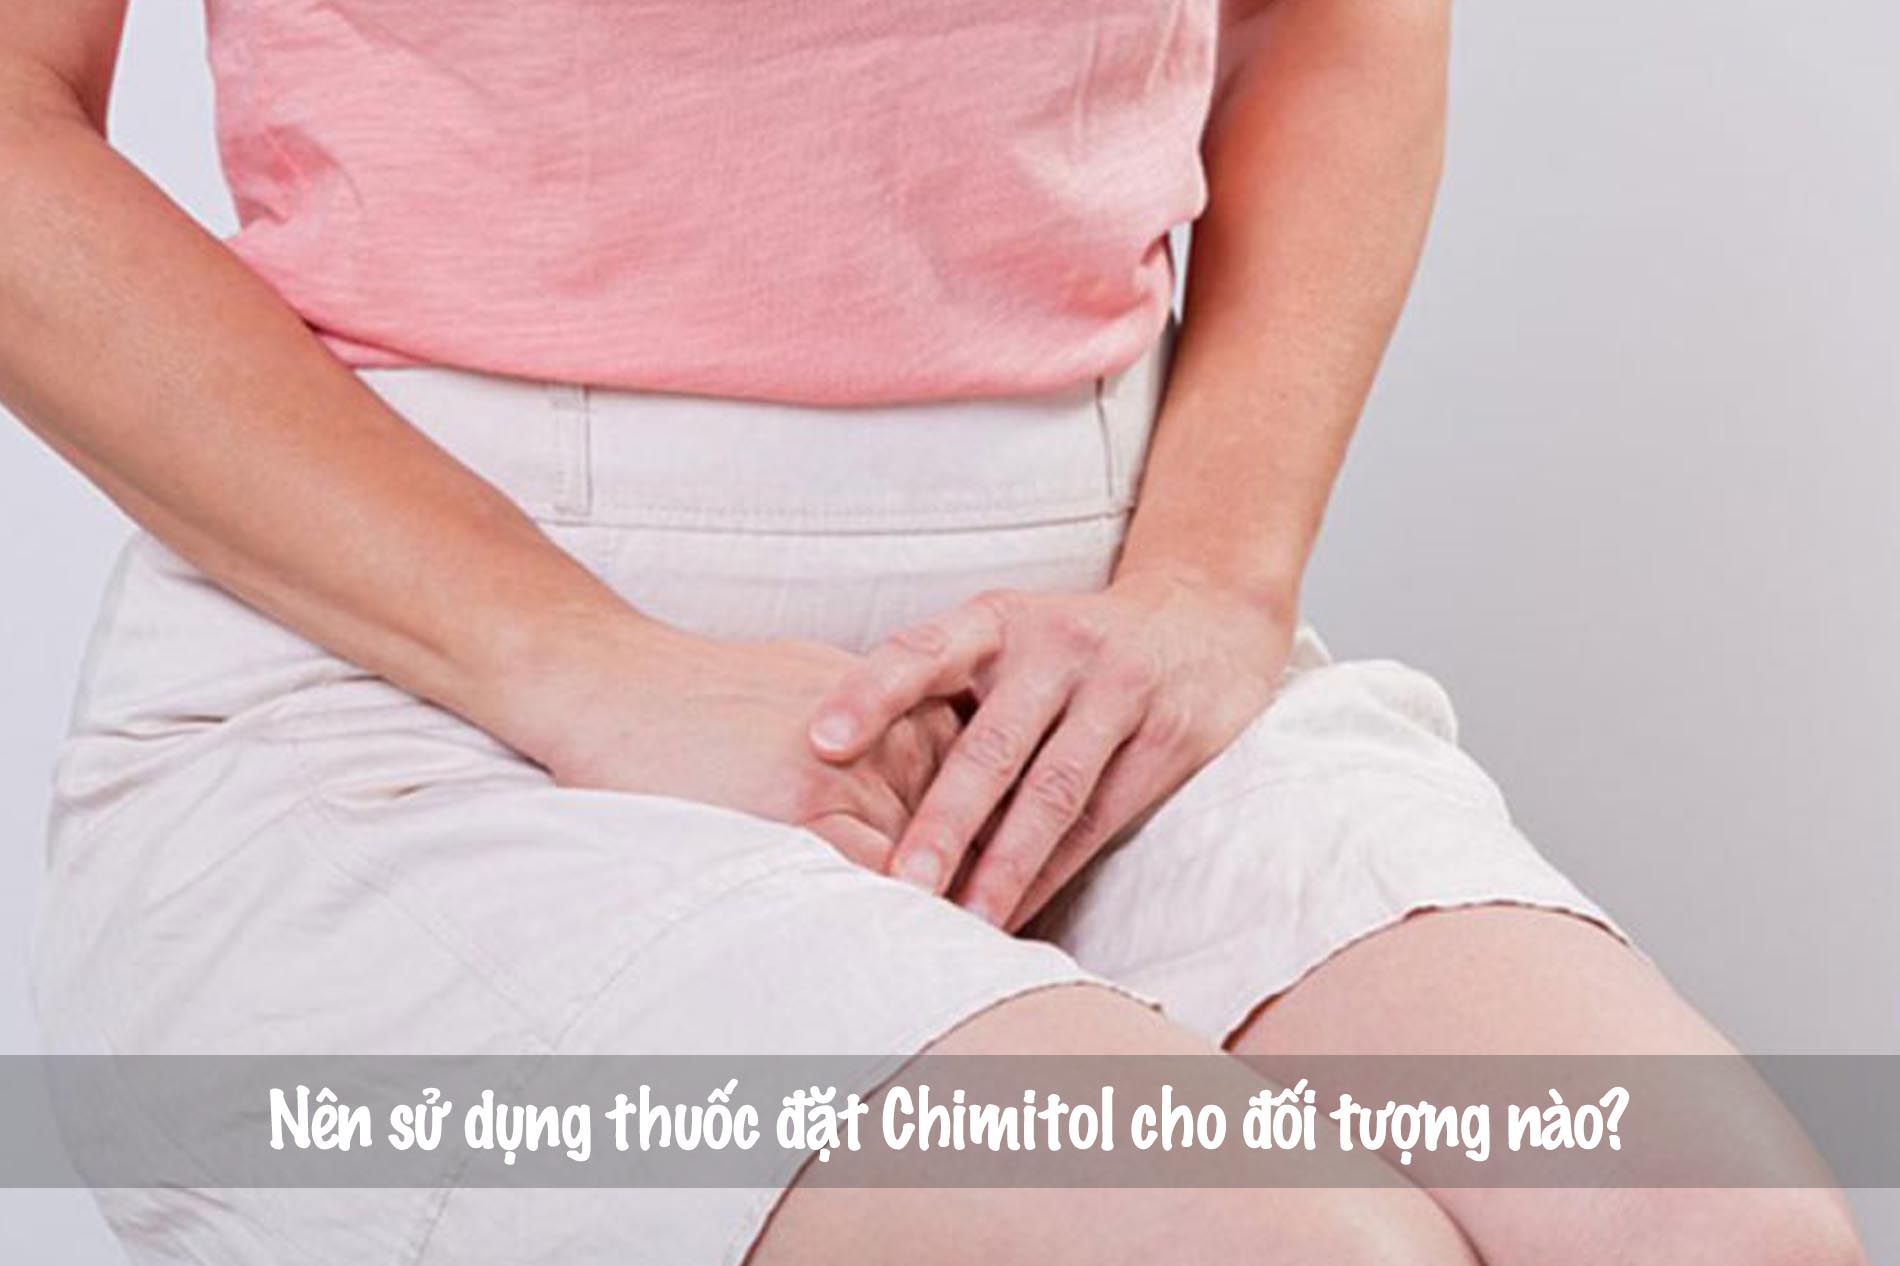 Chỉ định dùng thuốc Chimitol